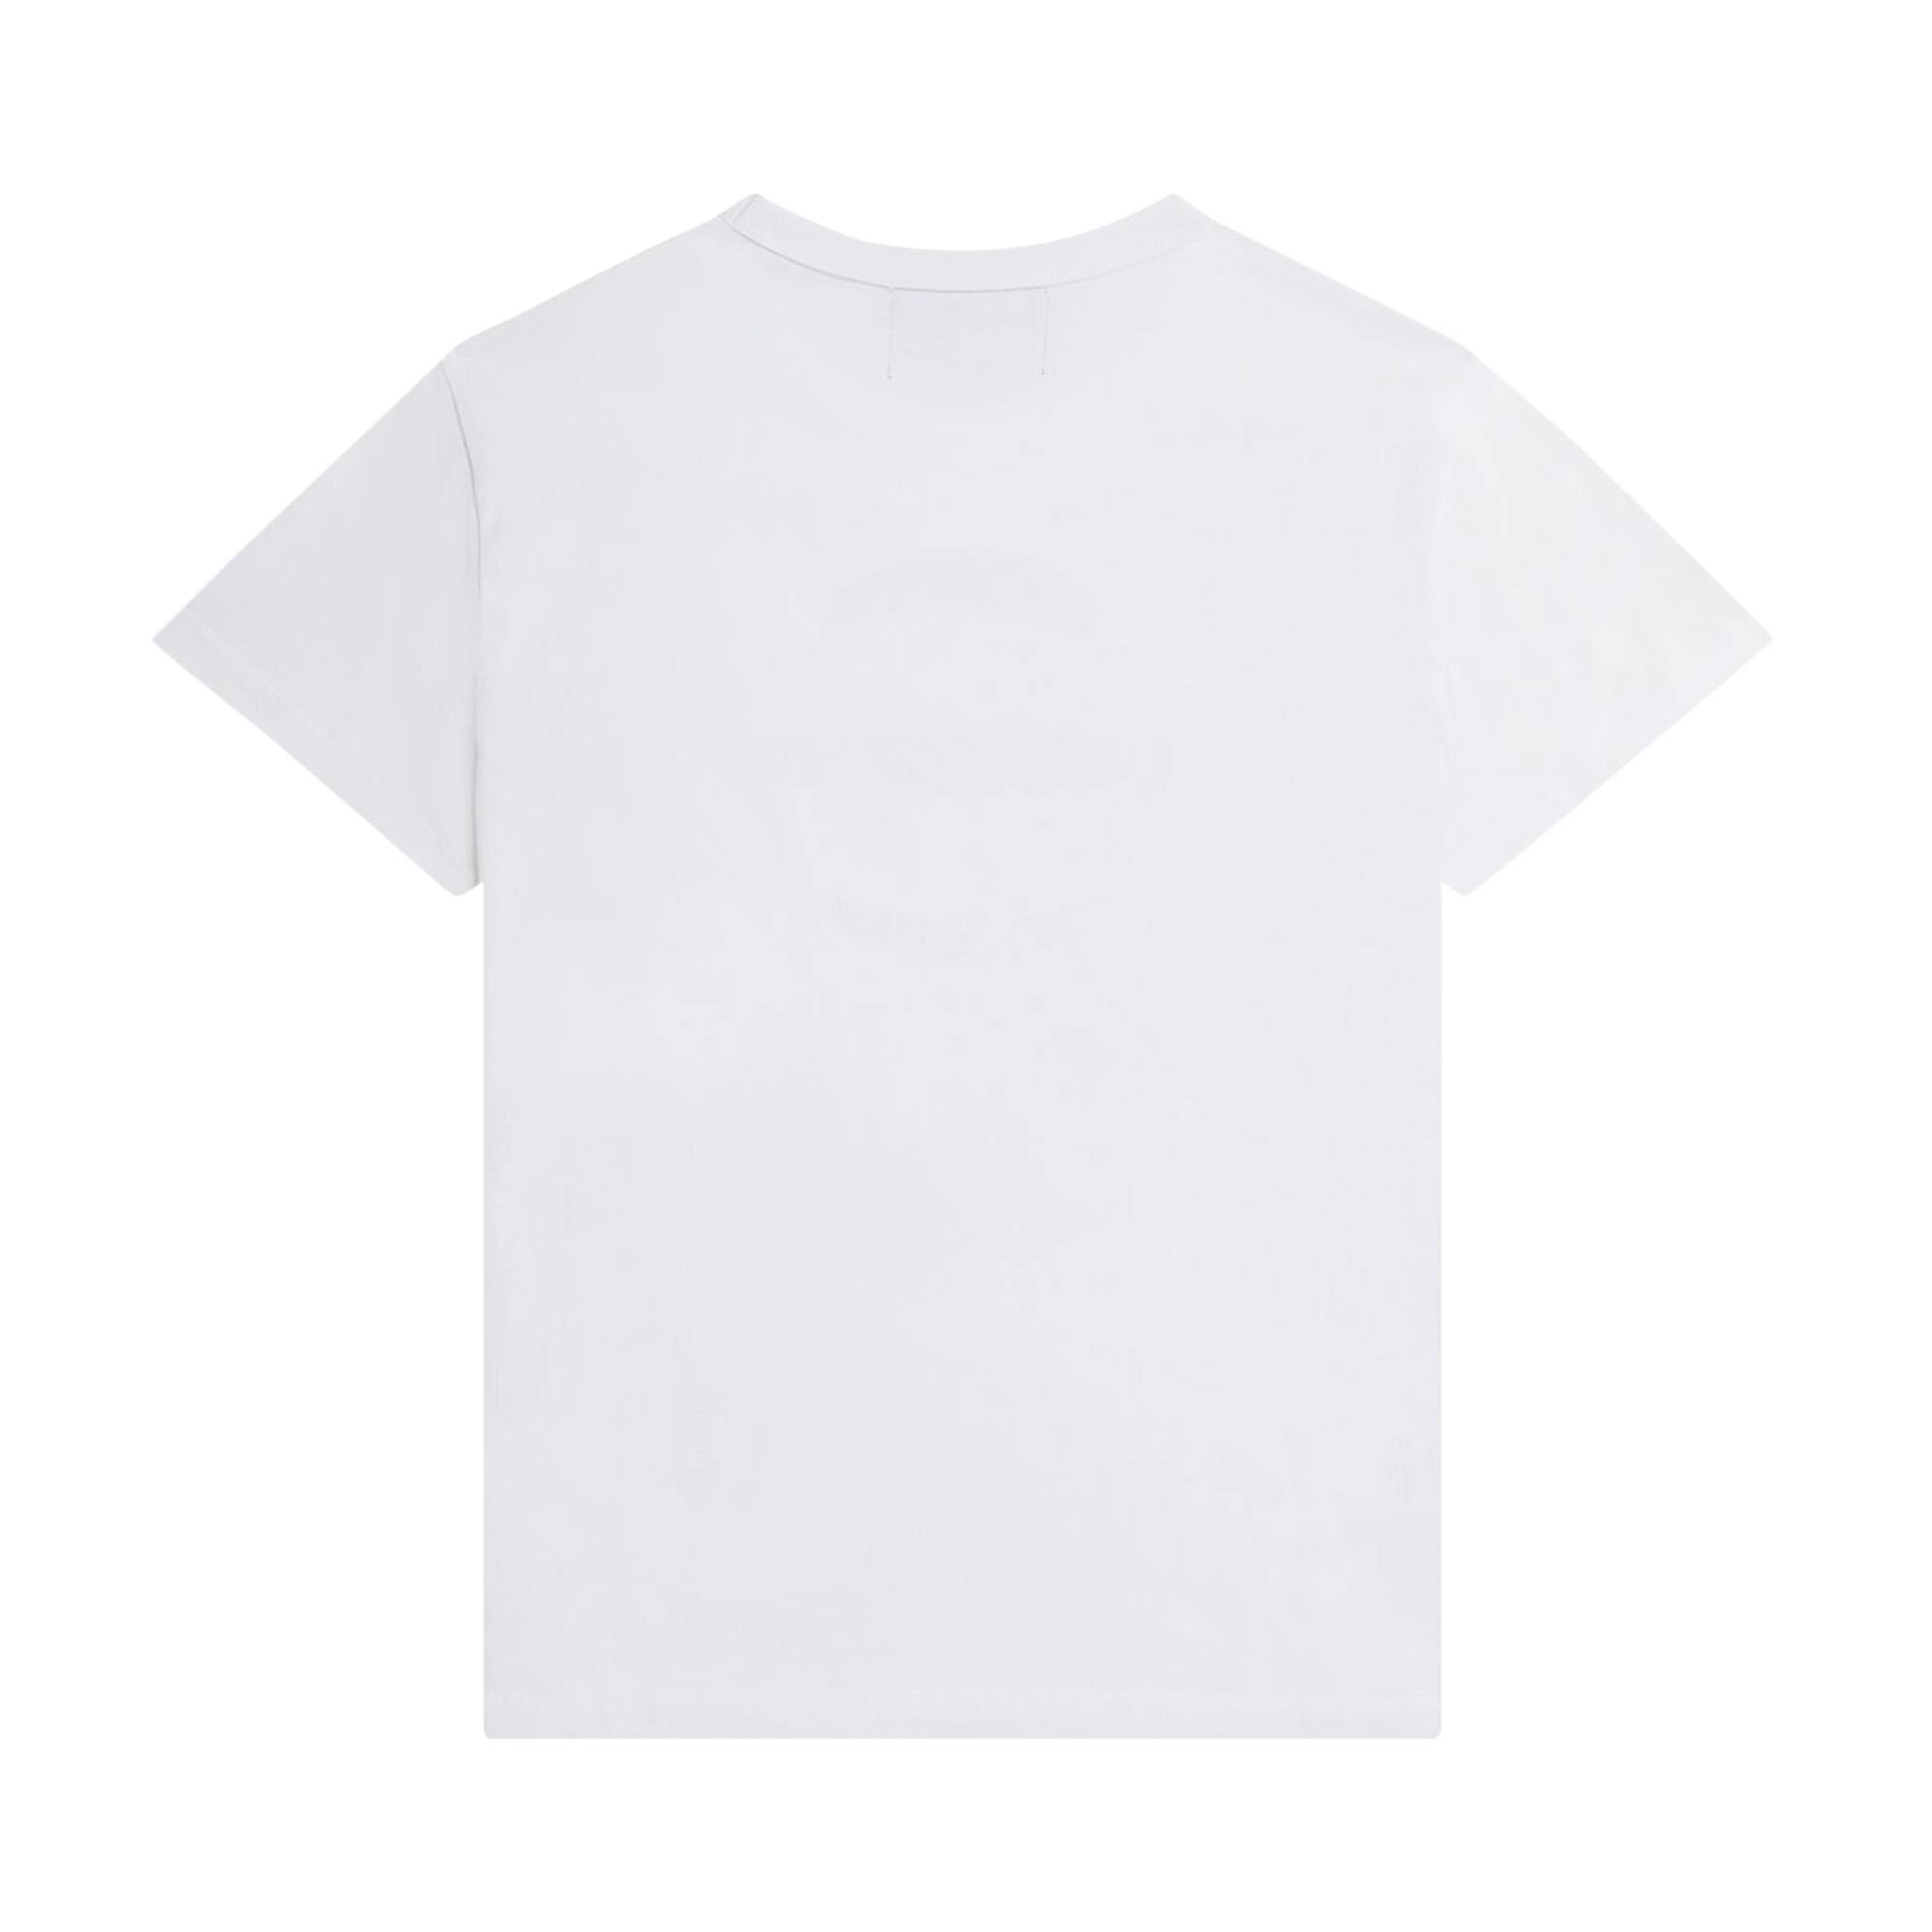 Fred Perry x Raf Simons Printed Slim T-Shirt 'White' - 2